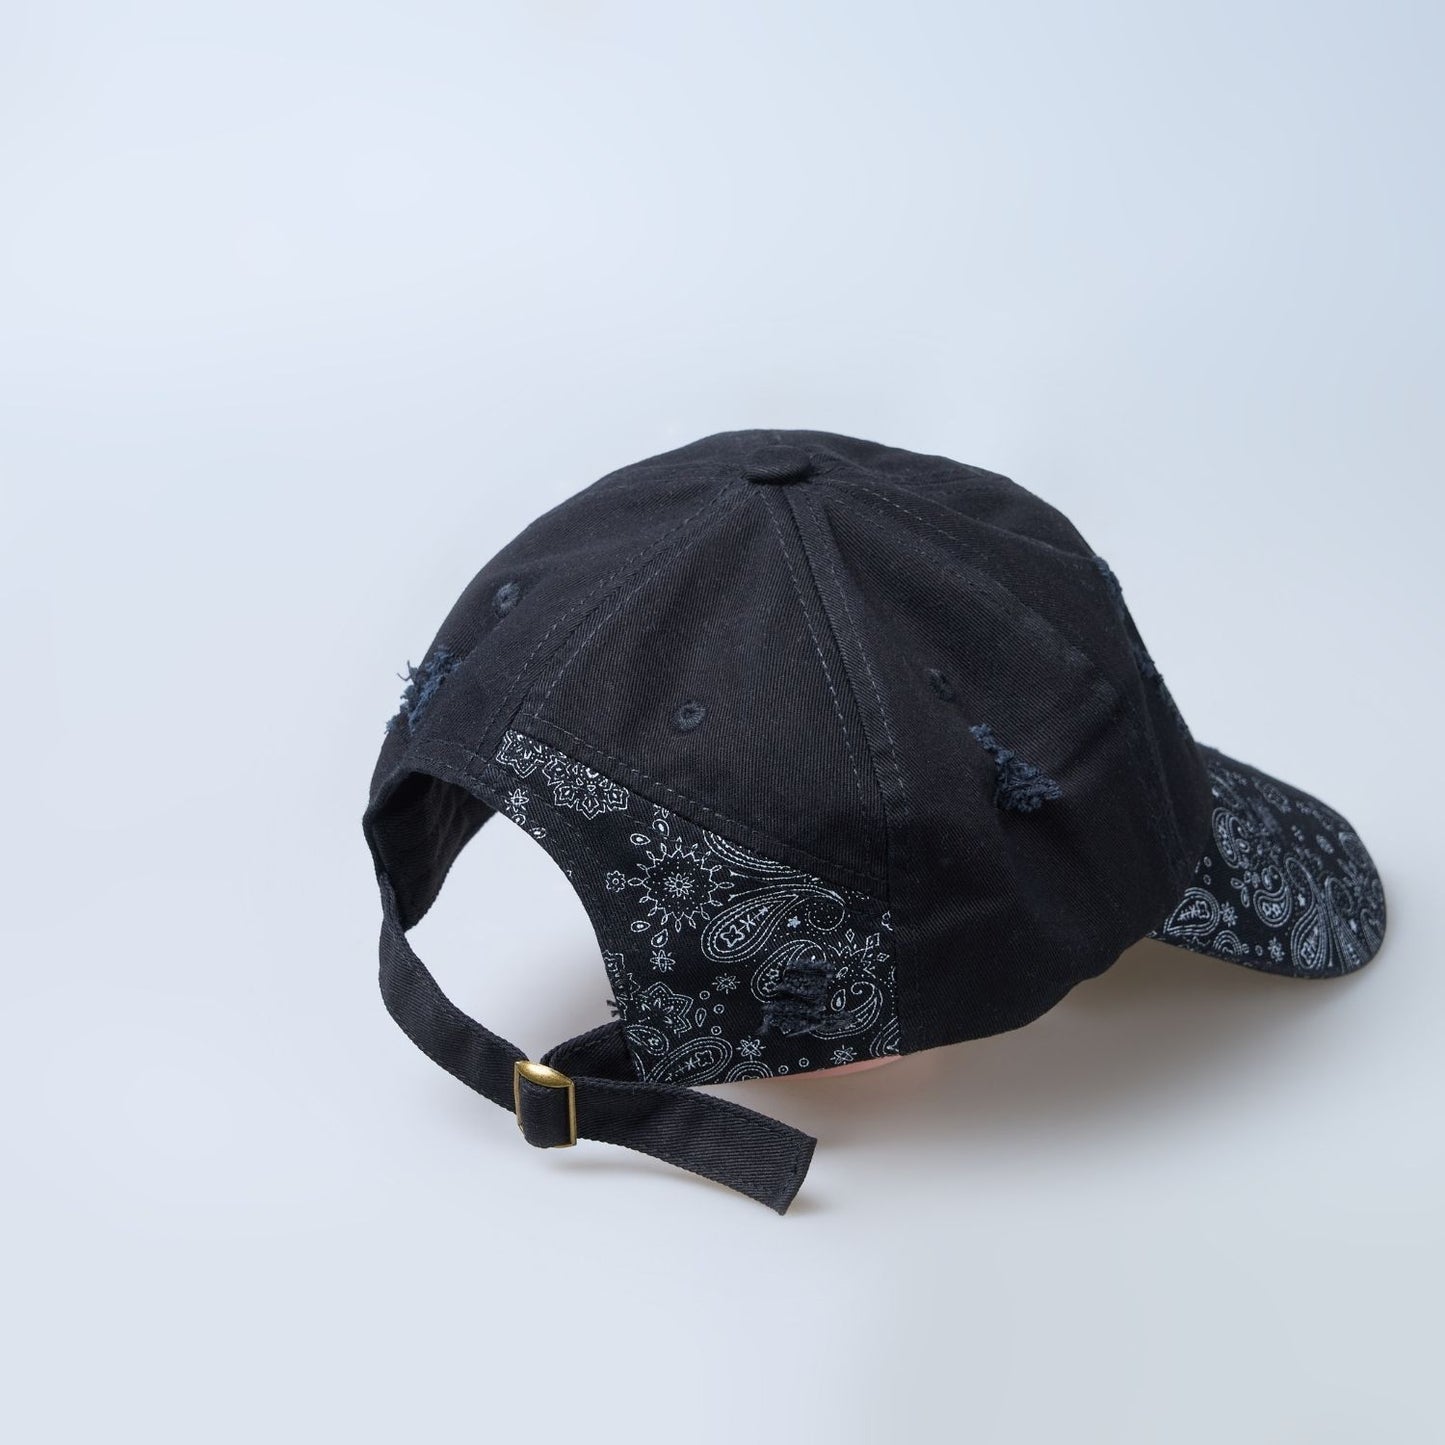 Black colored design patterned cap for men, back view.